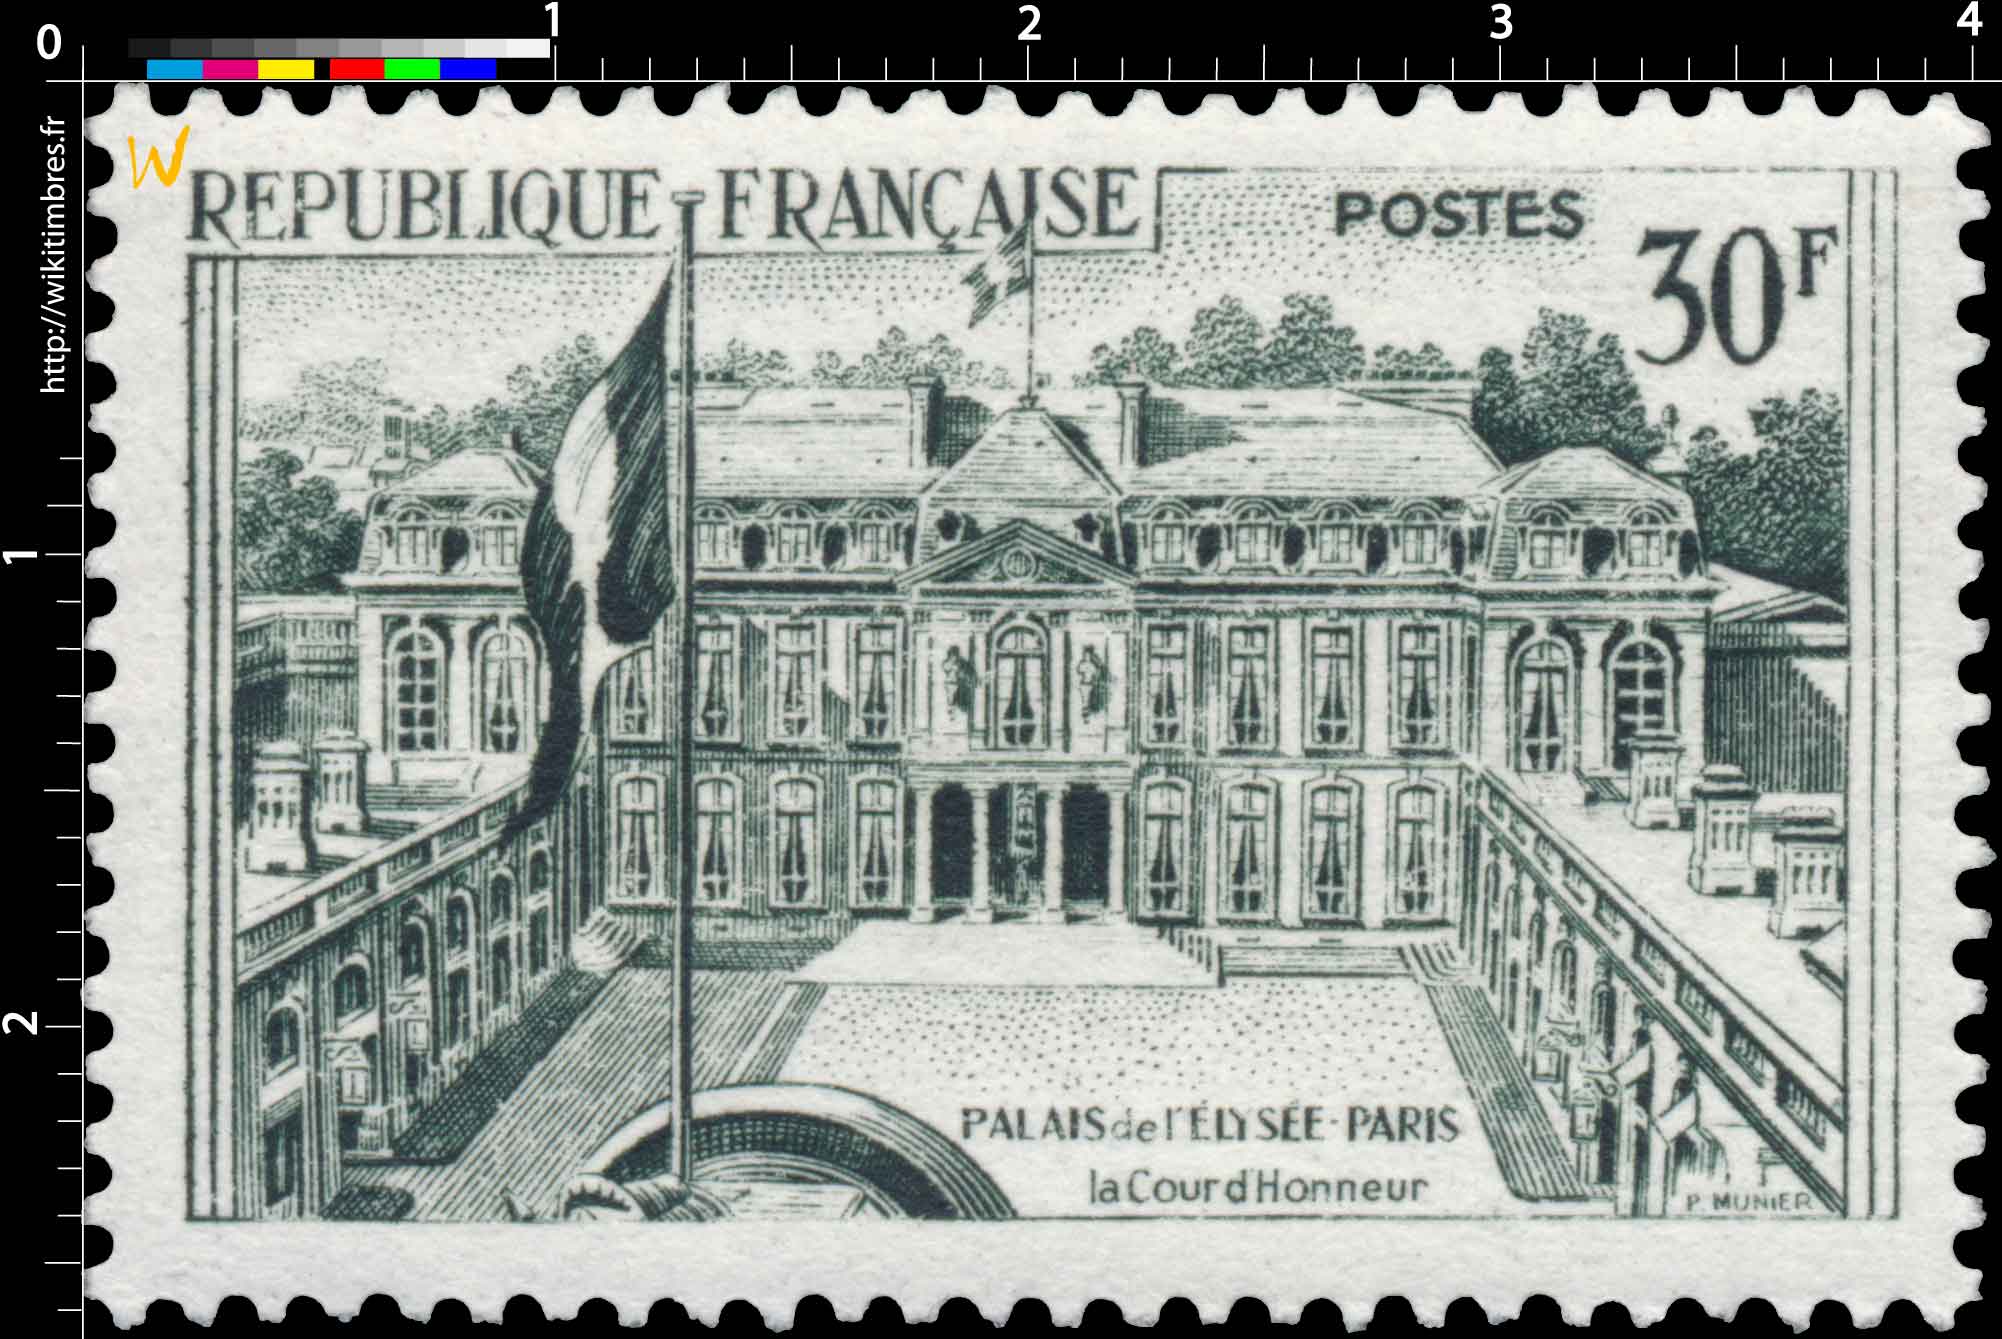 PALAIS de L'ÉLYSÉE - PARIS - La Cour d'Honneur